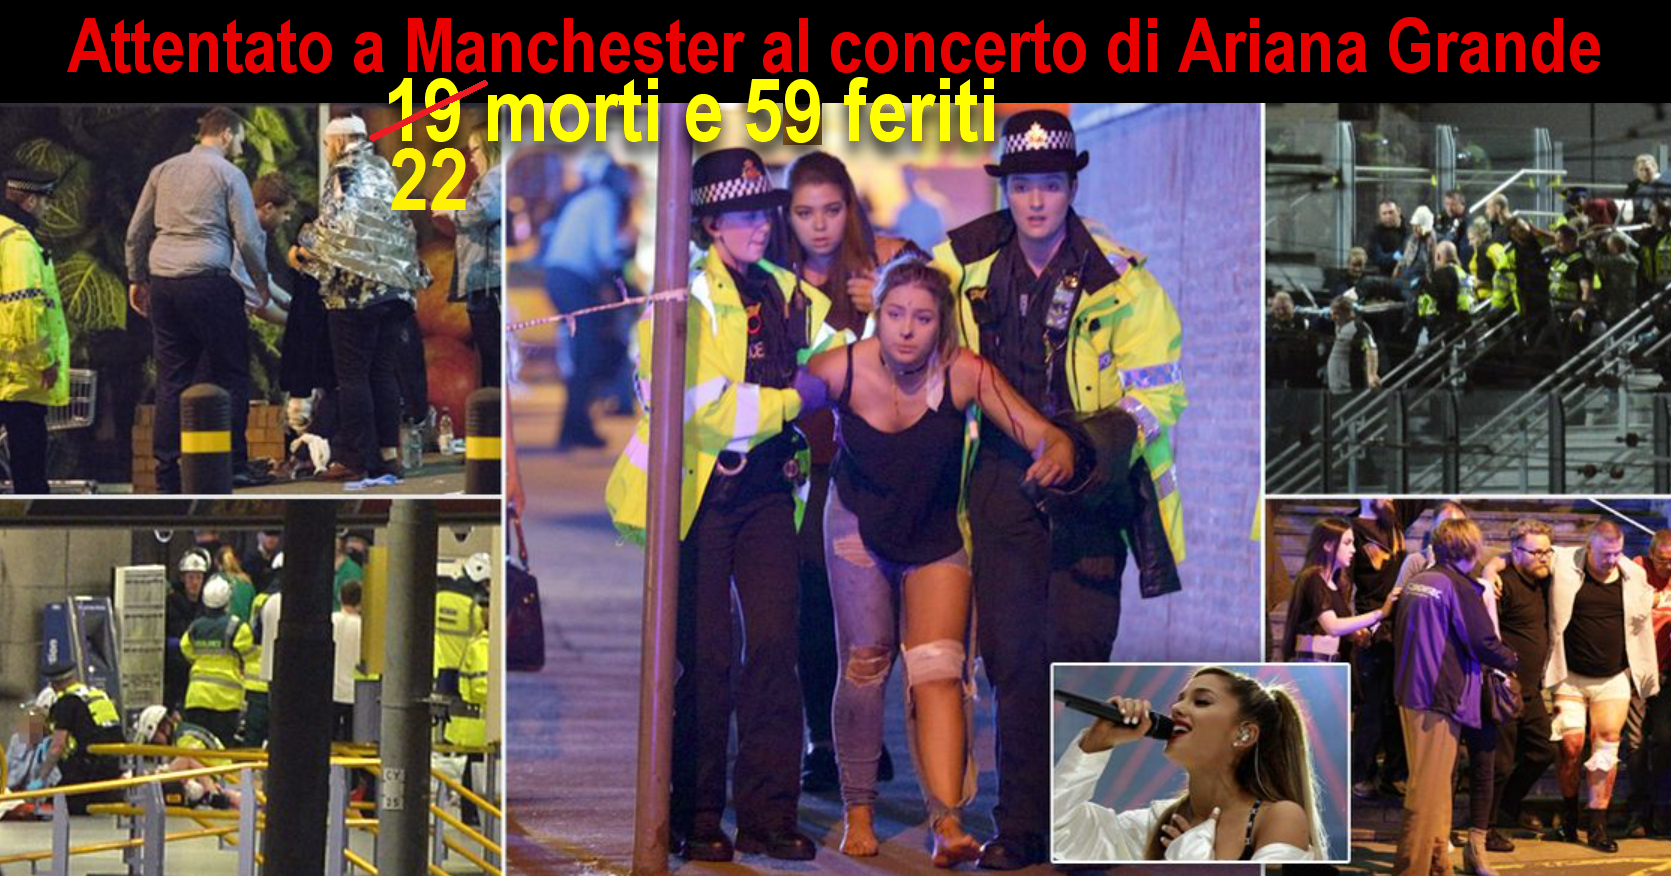 attentato manchester - Ariana Grande 22-59